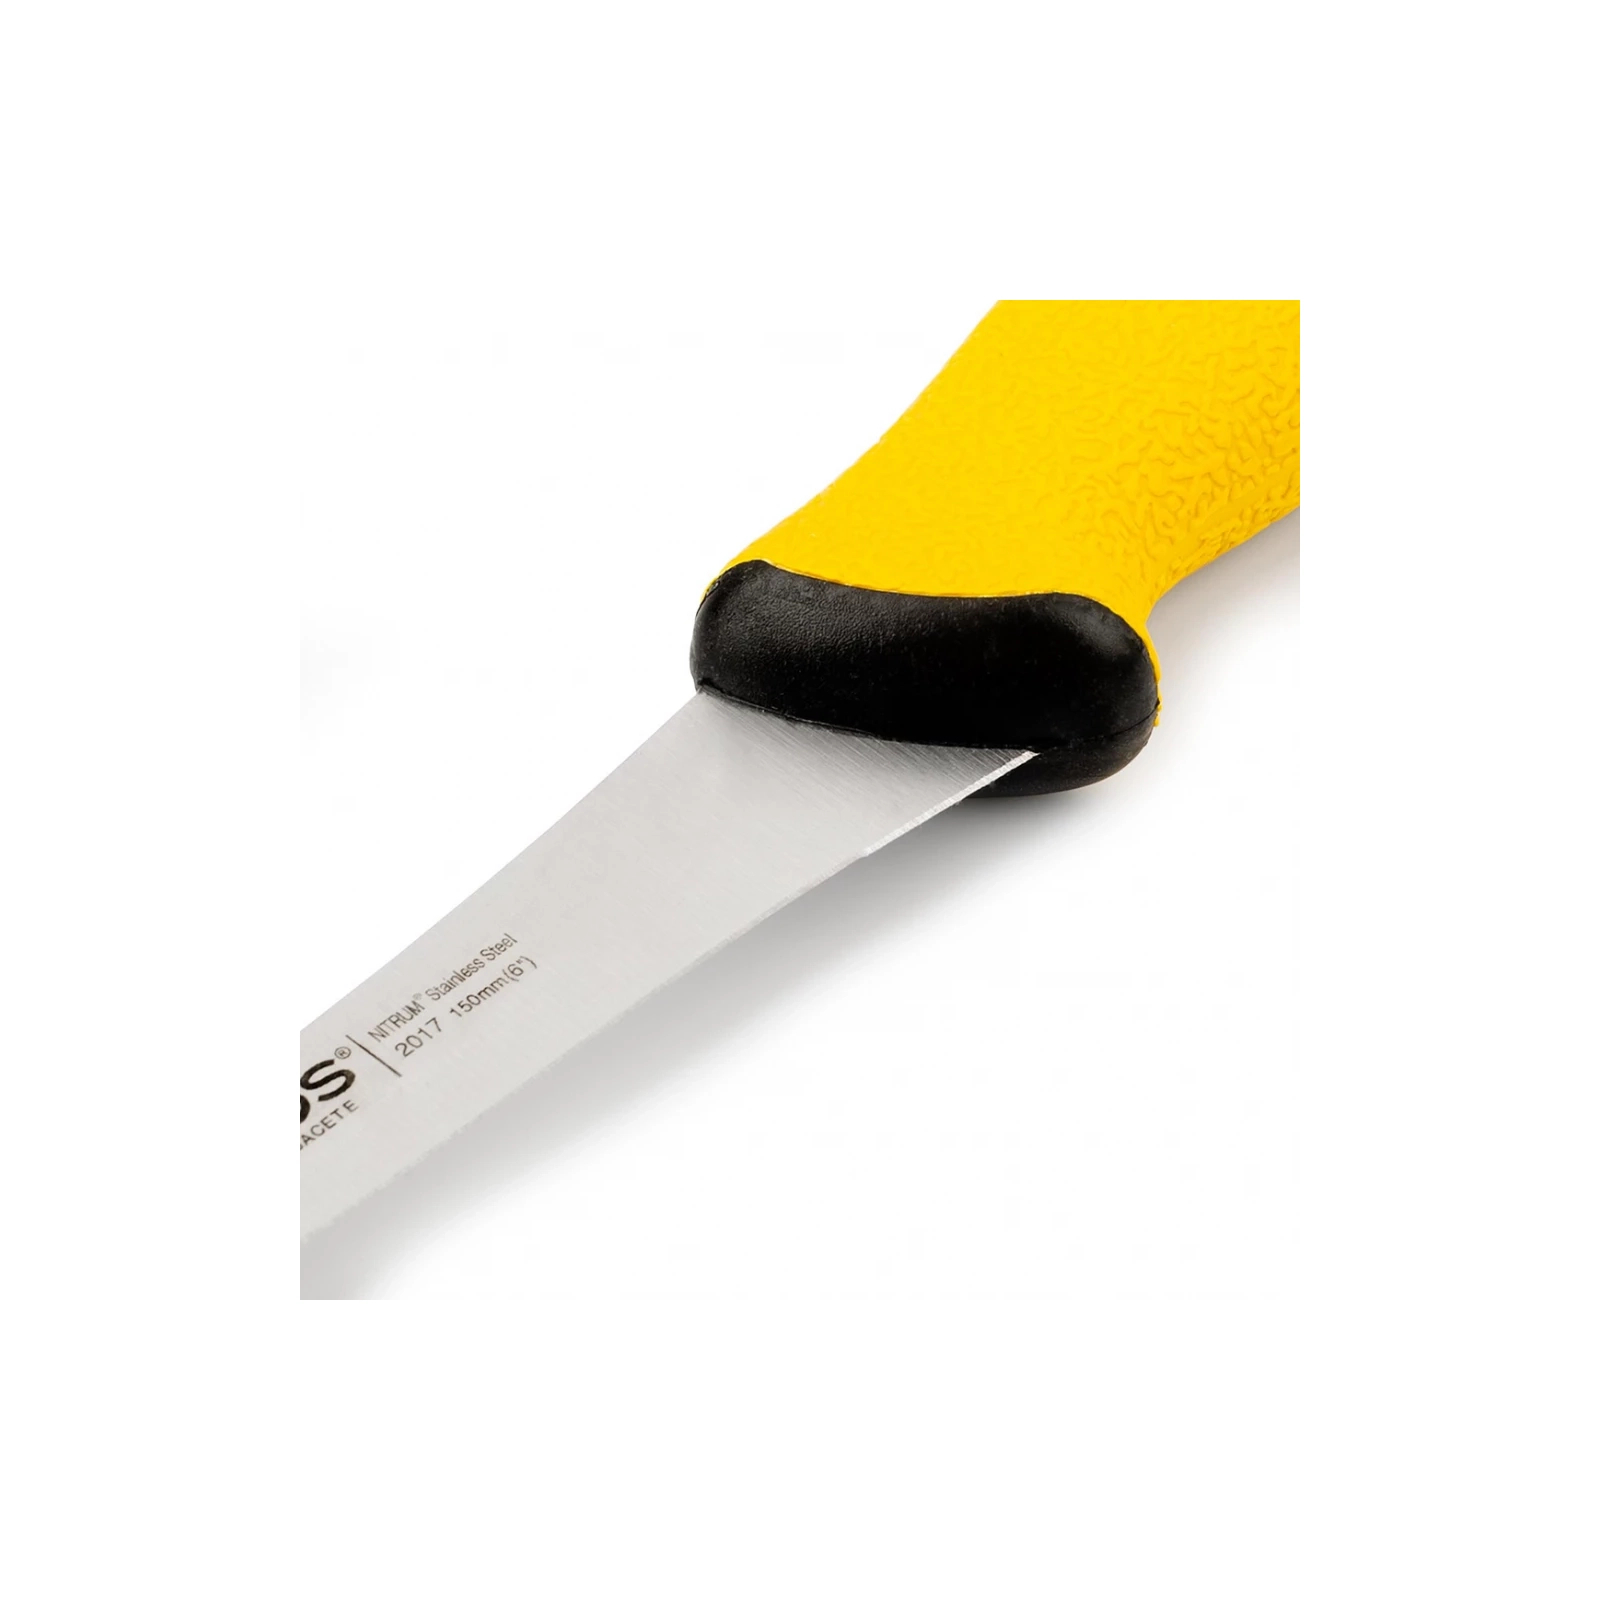 Кухонный нож Arcos Duo Pro обвалювальний 130 мм зі скошеним лезом (201100) изображение 2